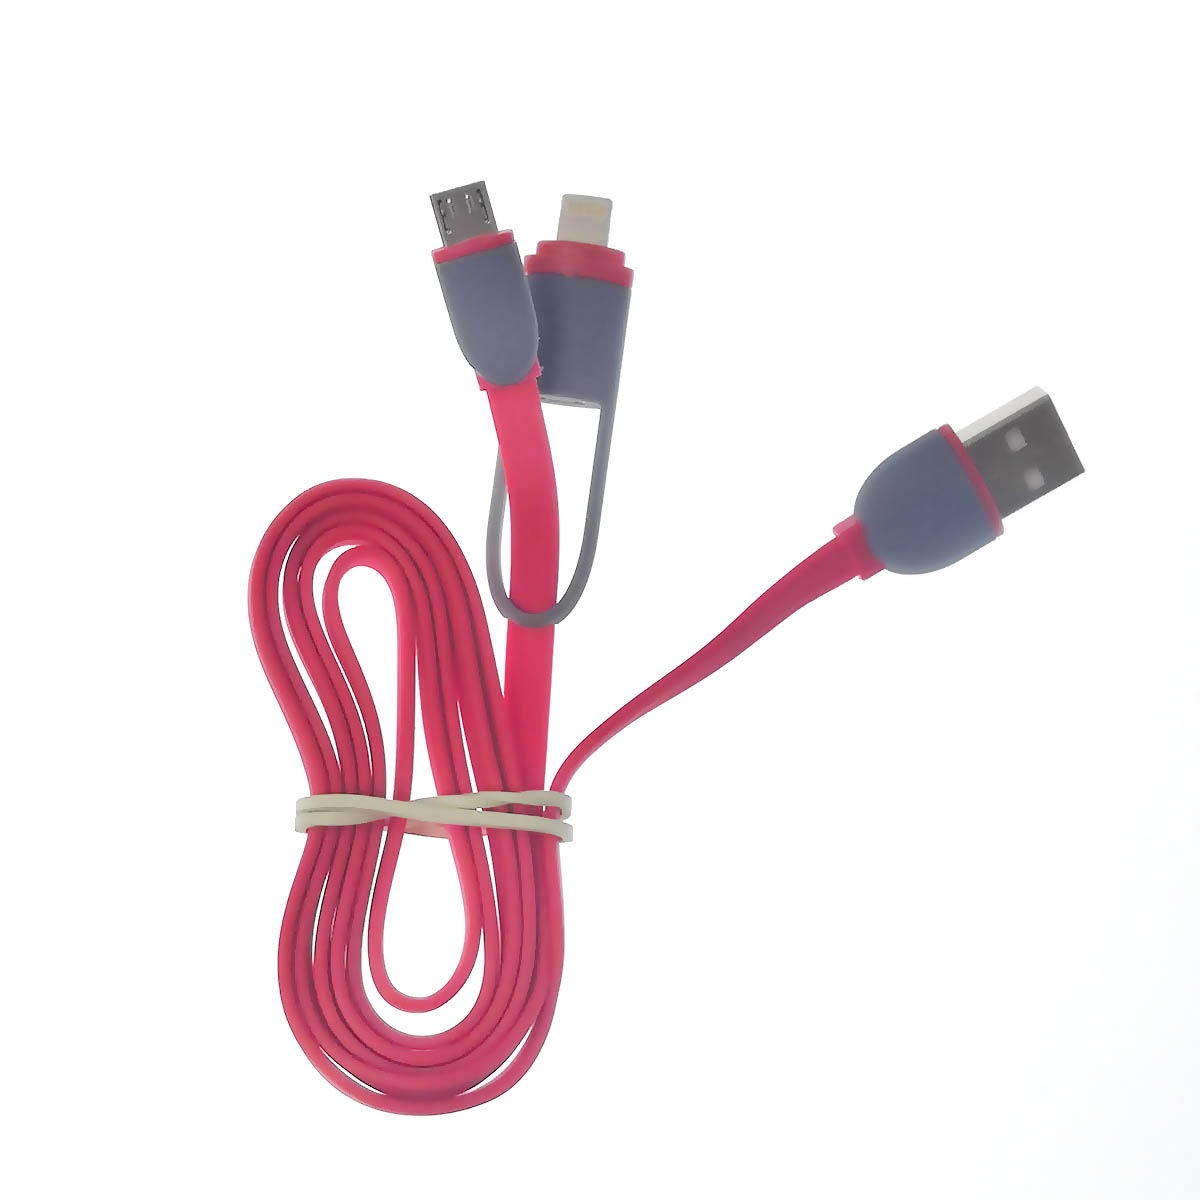 Кабель NGY-915 Micro USB, переходник на Lightning 8 pin, длина 1 метр, цвет красный